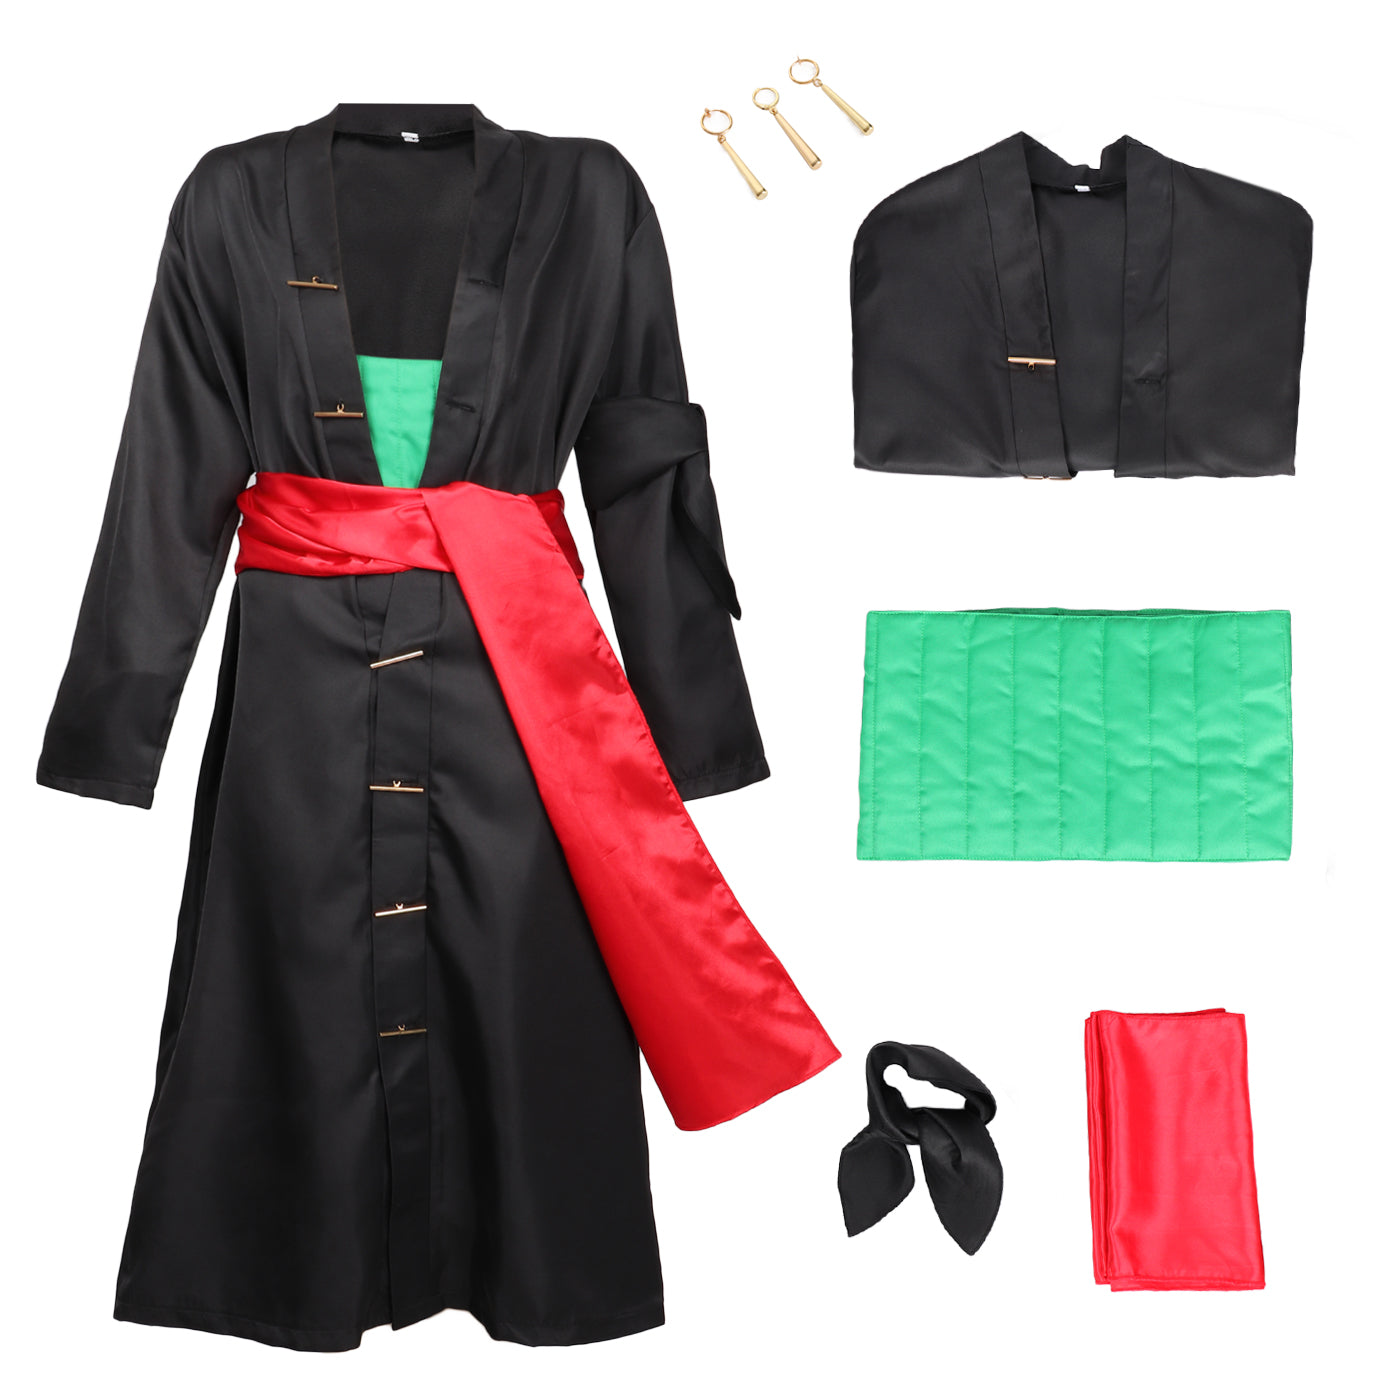 Roronoa Zoro Cosplay Costume Black Kimono Robe Cloak with Sash Armband and Earrings